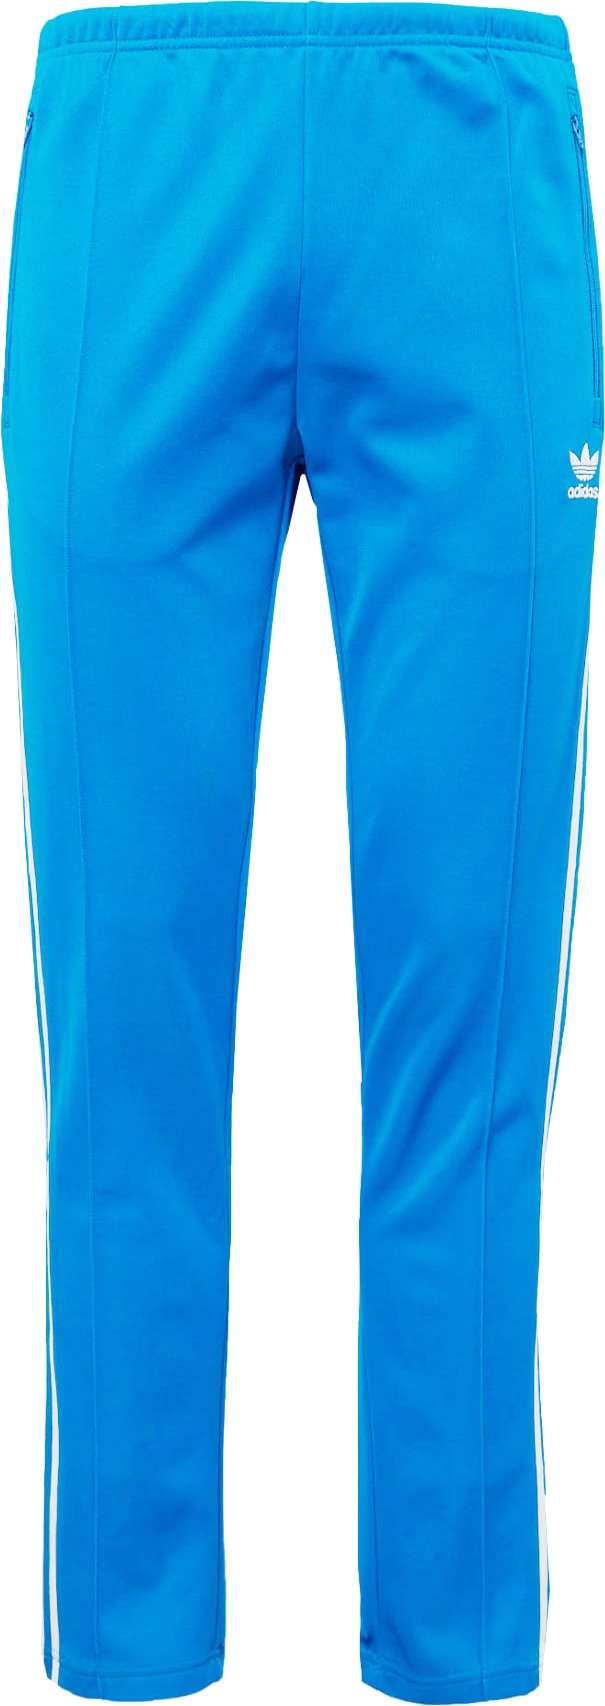 Kalhoty adidas Originals královská modrá / bílá